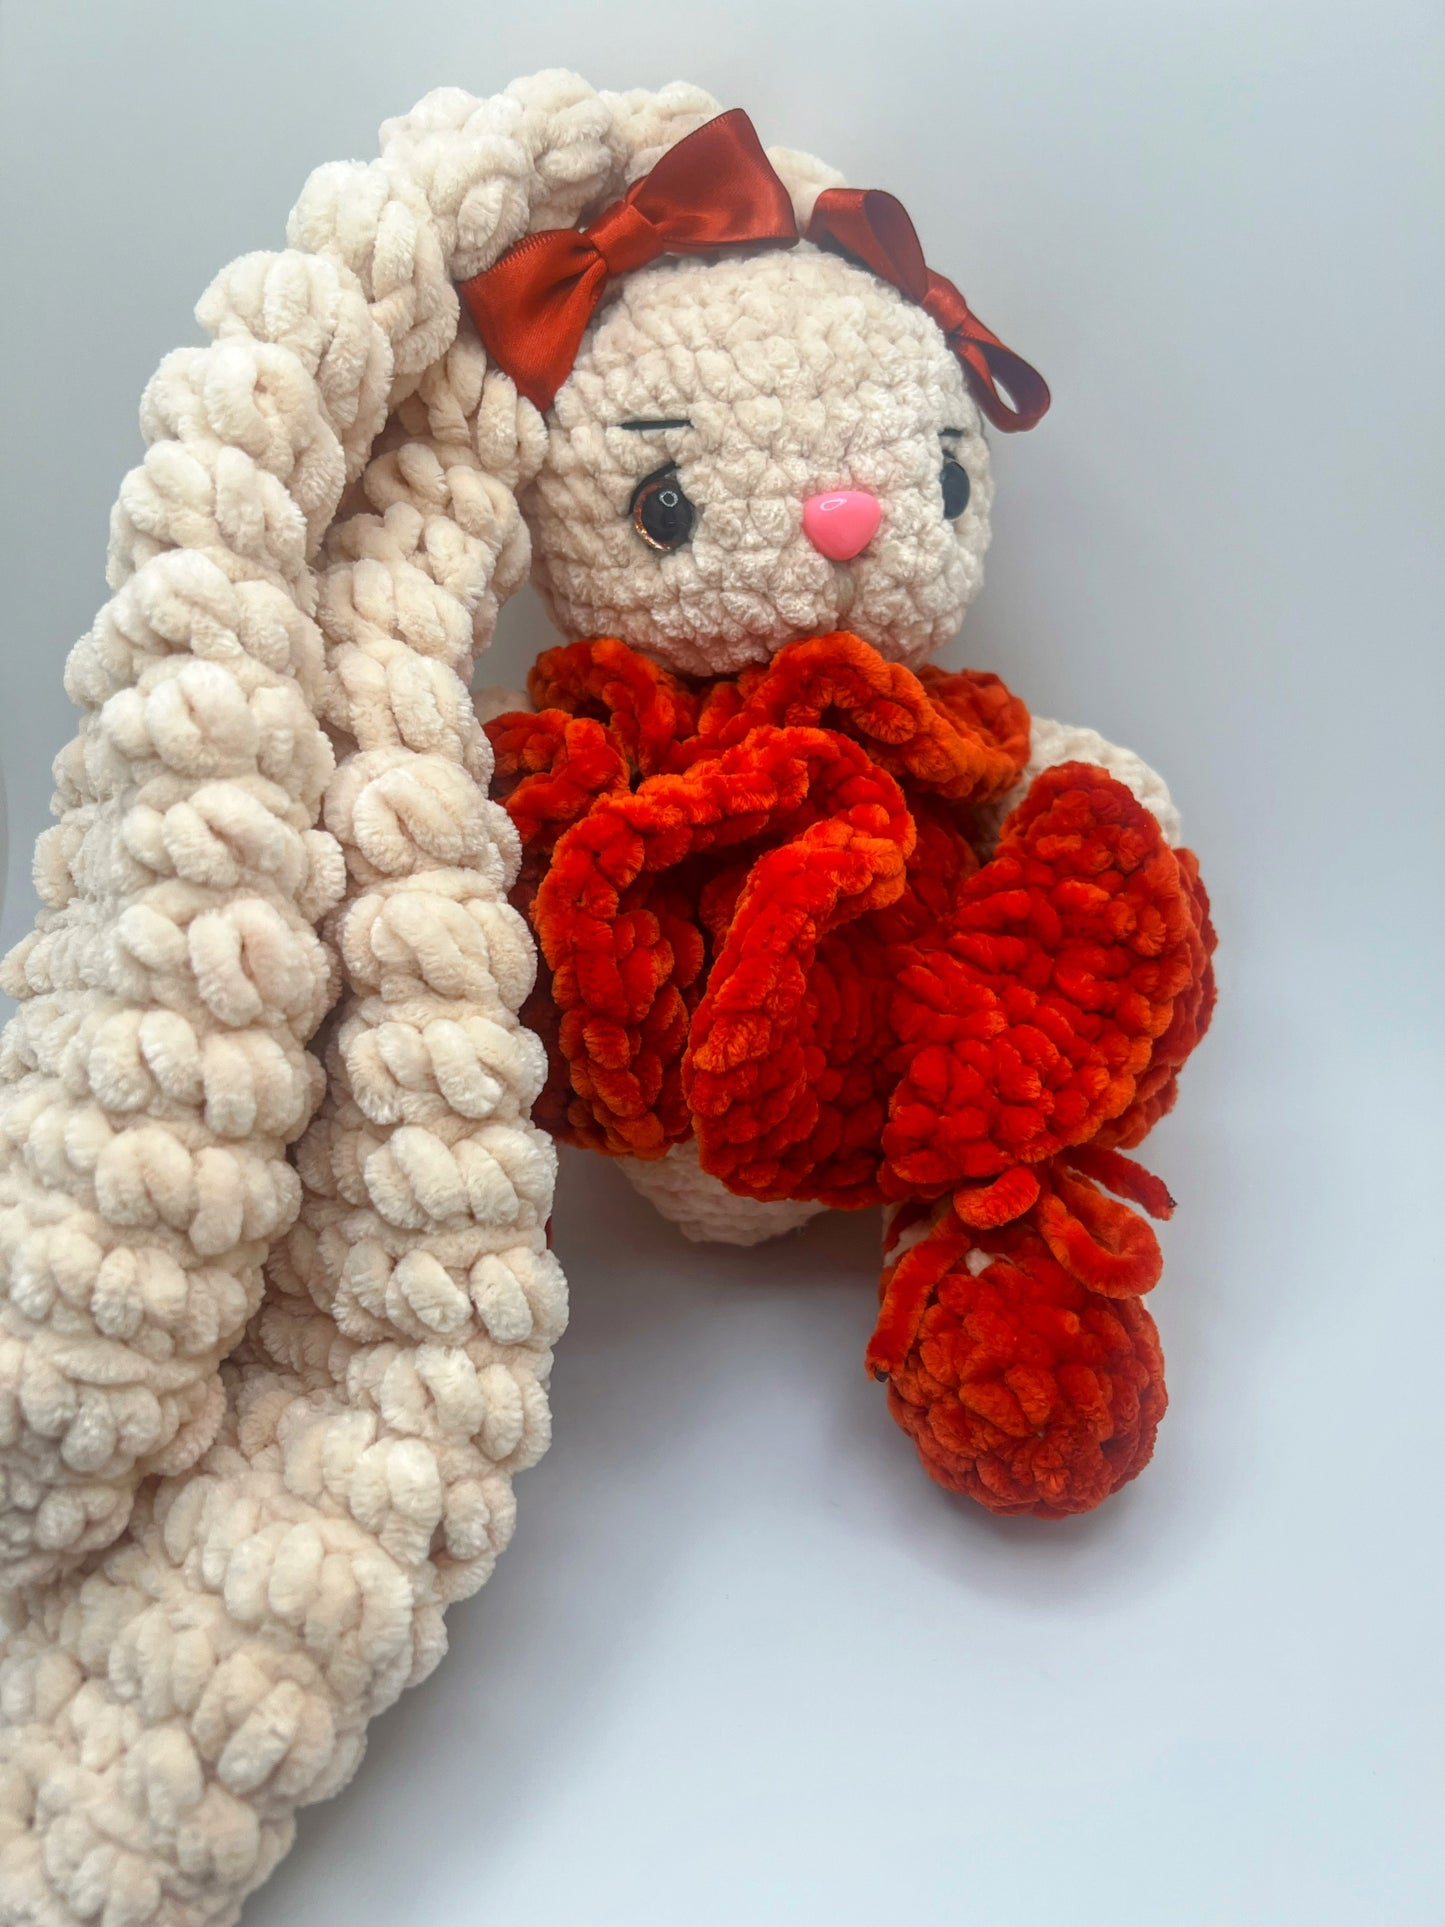 Stuffed Cute Cuddly Bunny 🐰 (Green & Orange) - Crochet Knitted Amigurumi Toy